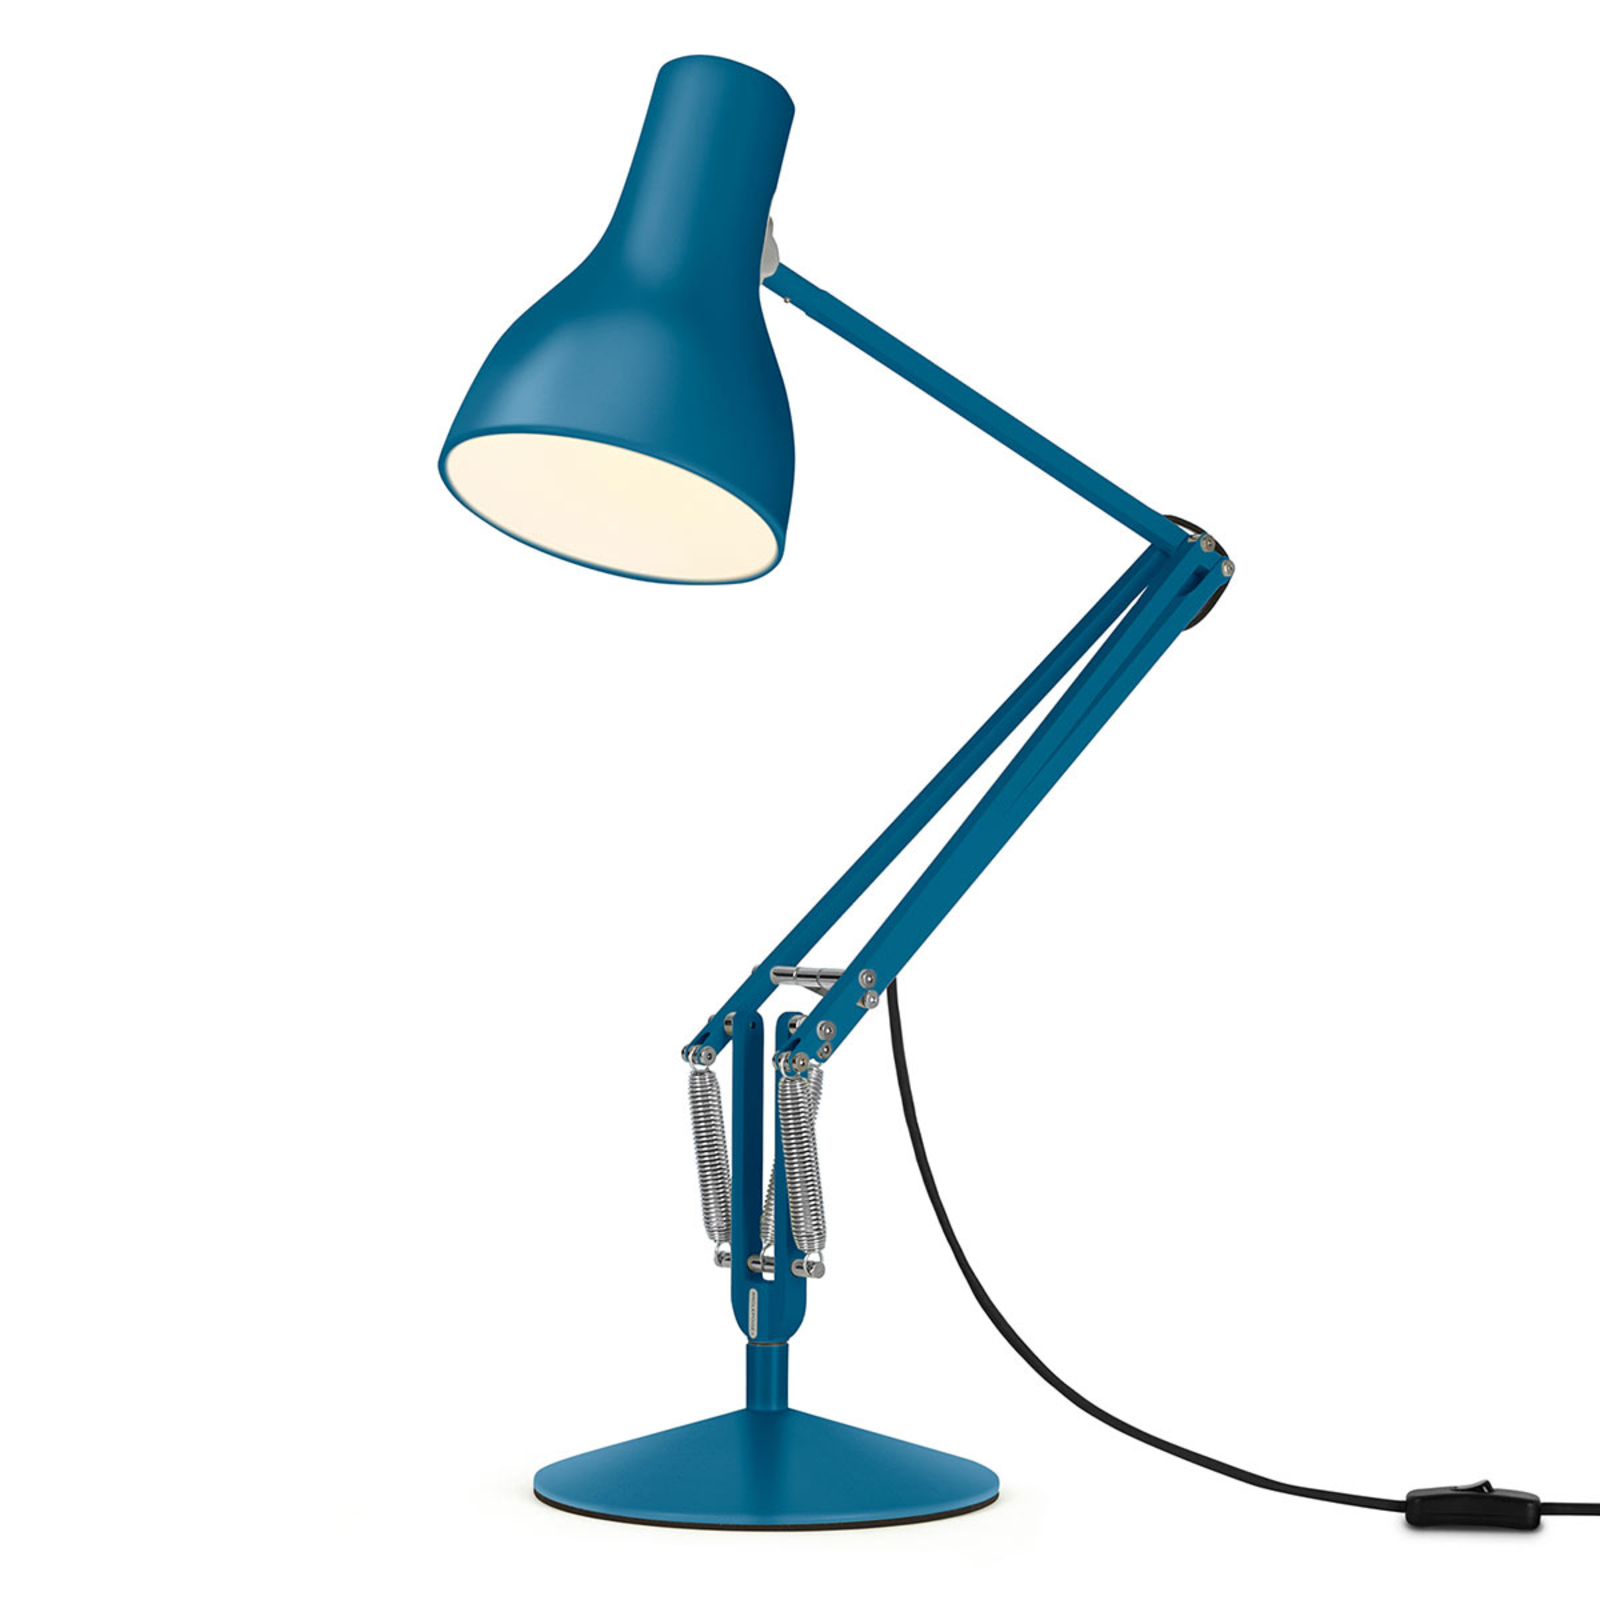 Stolní lampa Anglepoise typ 75 Margaret Howell modrá